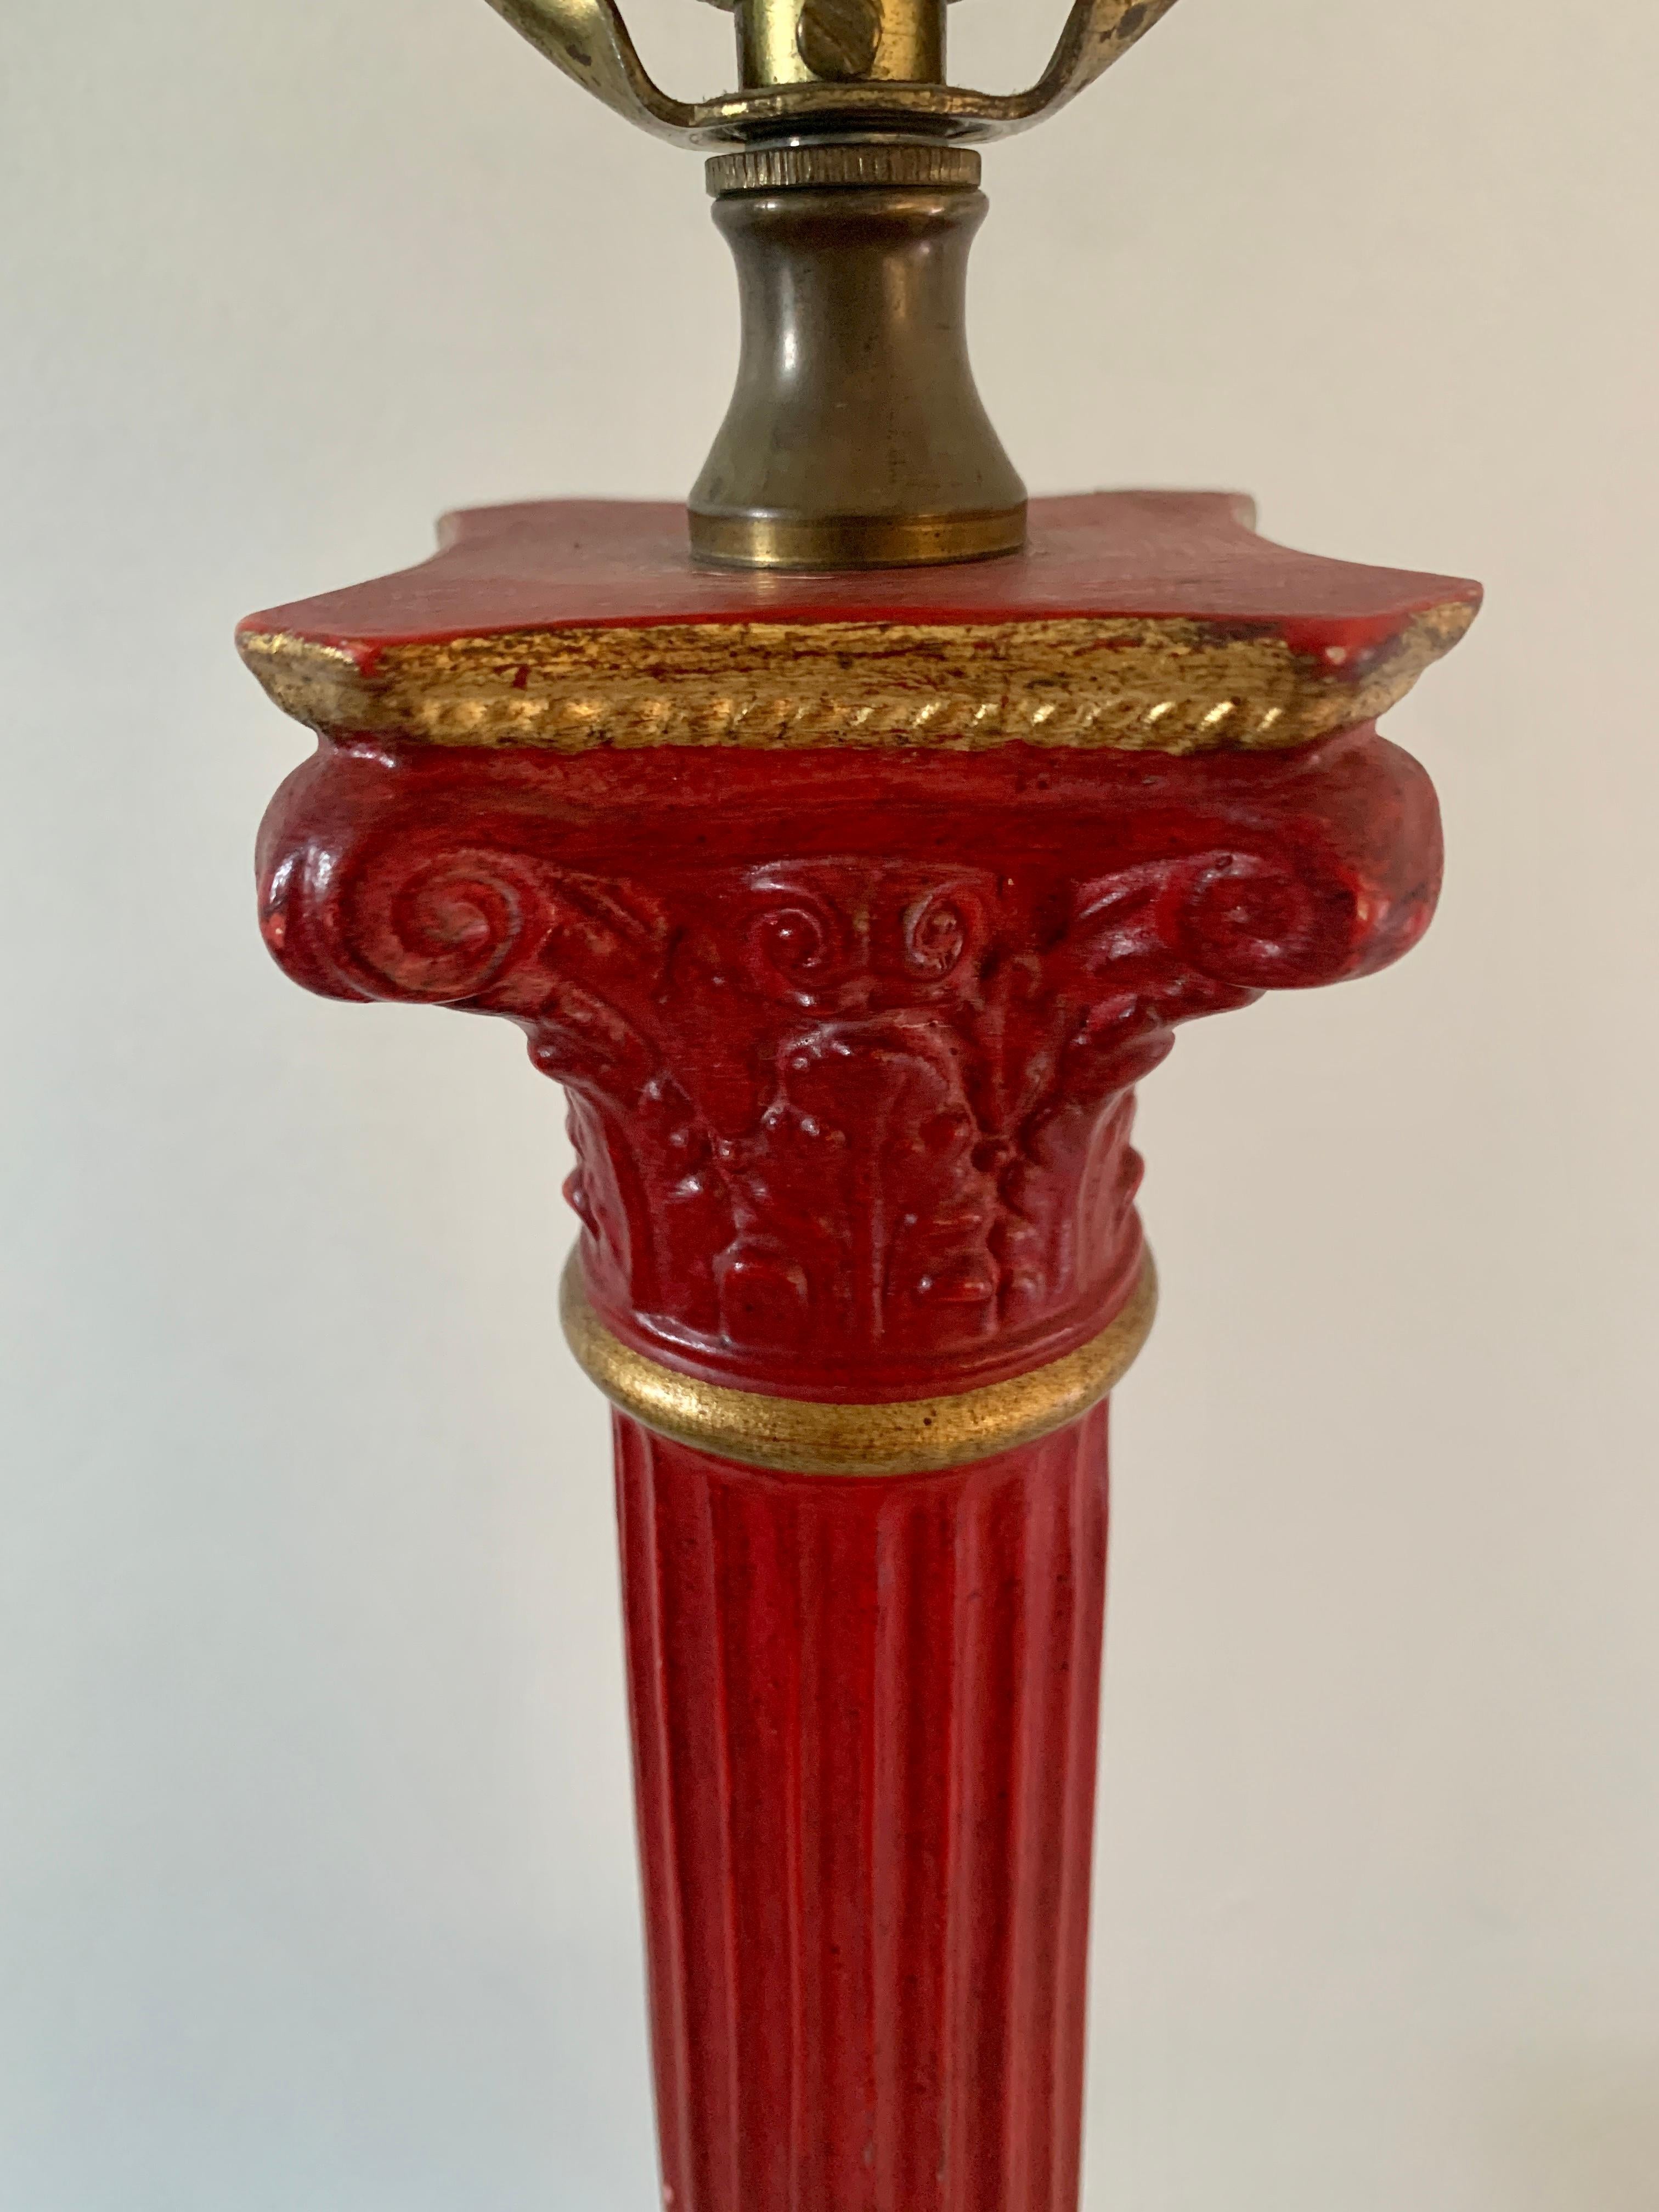 Eine prächtige Tischlampe im neoklassischen Stil mit roter und goldener korinthischer Säule und Lorbeerkranz-Akzent

USA, Mitte des 20. Jahrhunderts

Maße: 5,25 